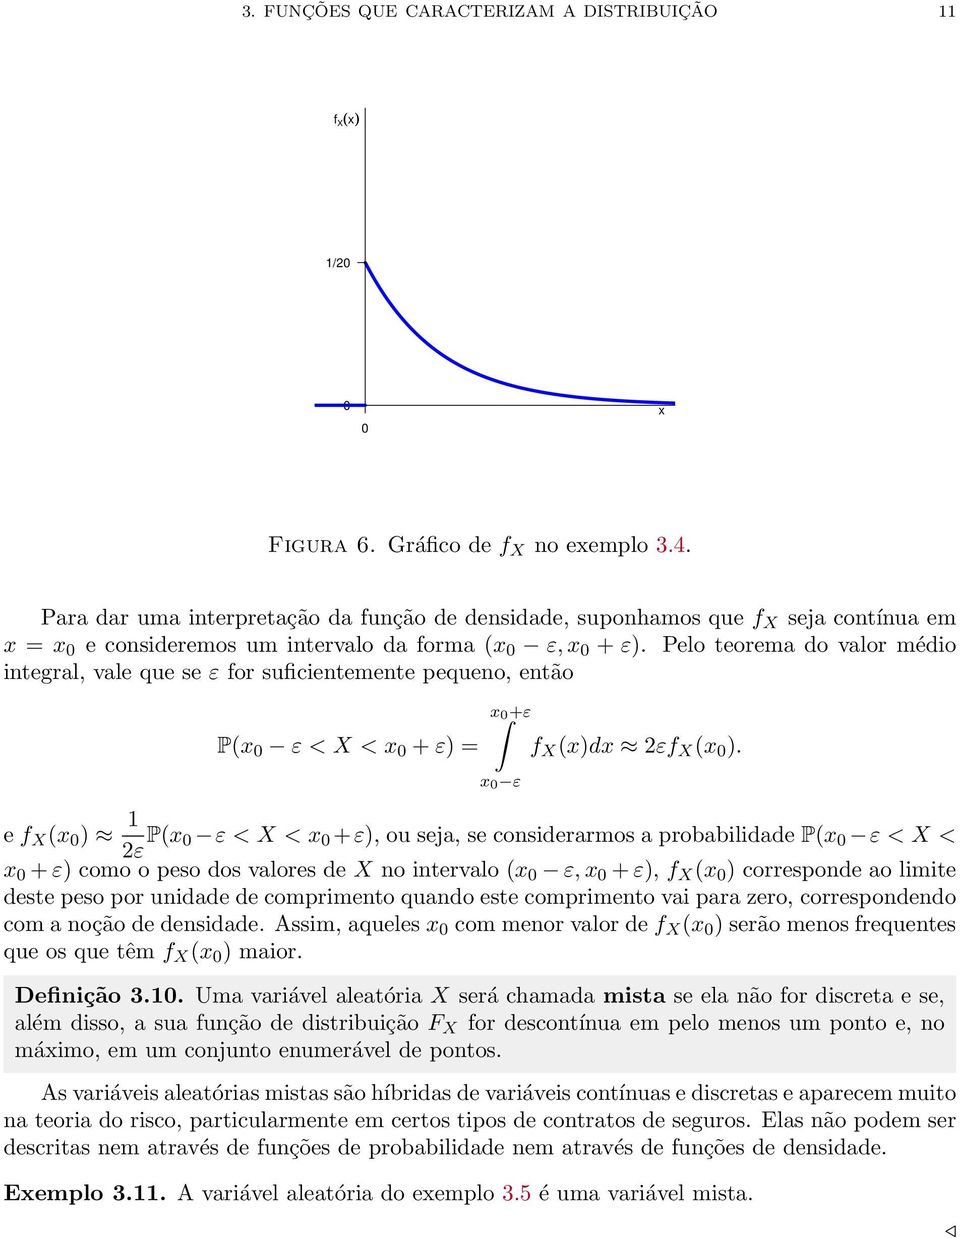 Pelo teorema o valor méio integral, vale que se ε for suficientemente pequeno, então P(x ε < X < x + ε) = x +ε x ε f X (x)x 2εf X (x ).